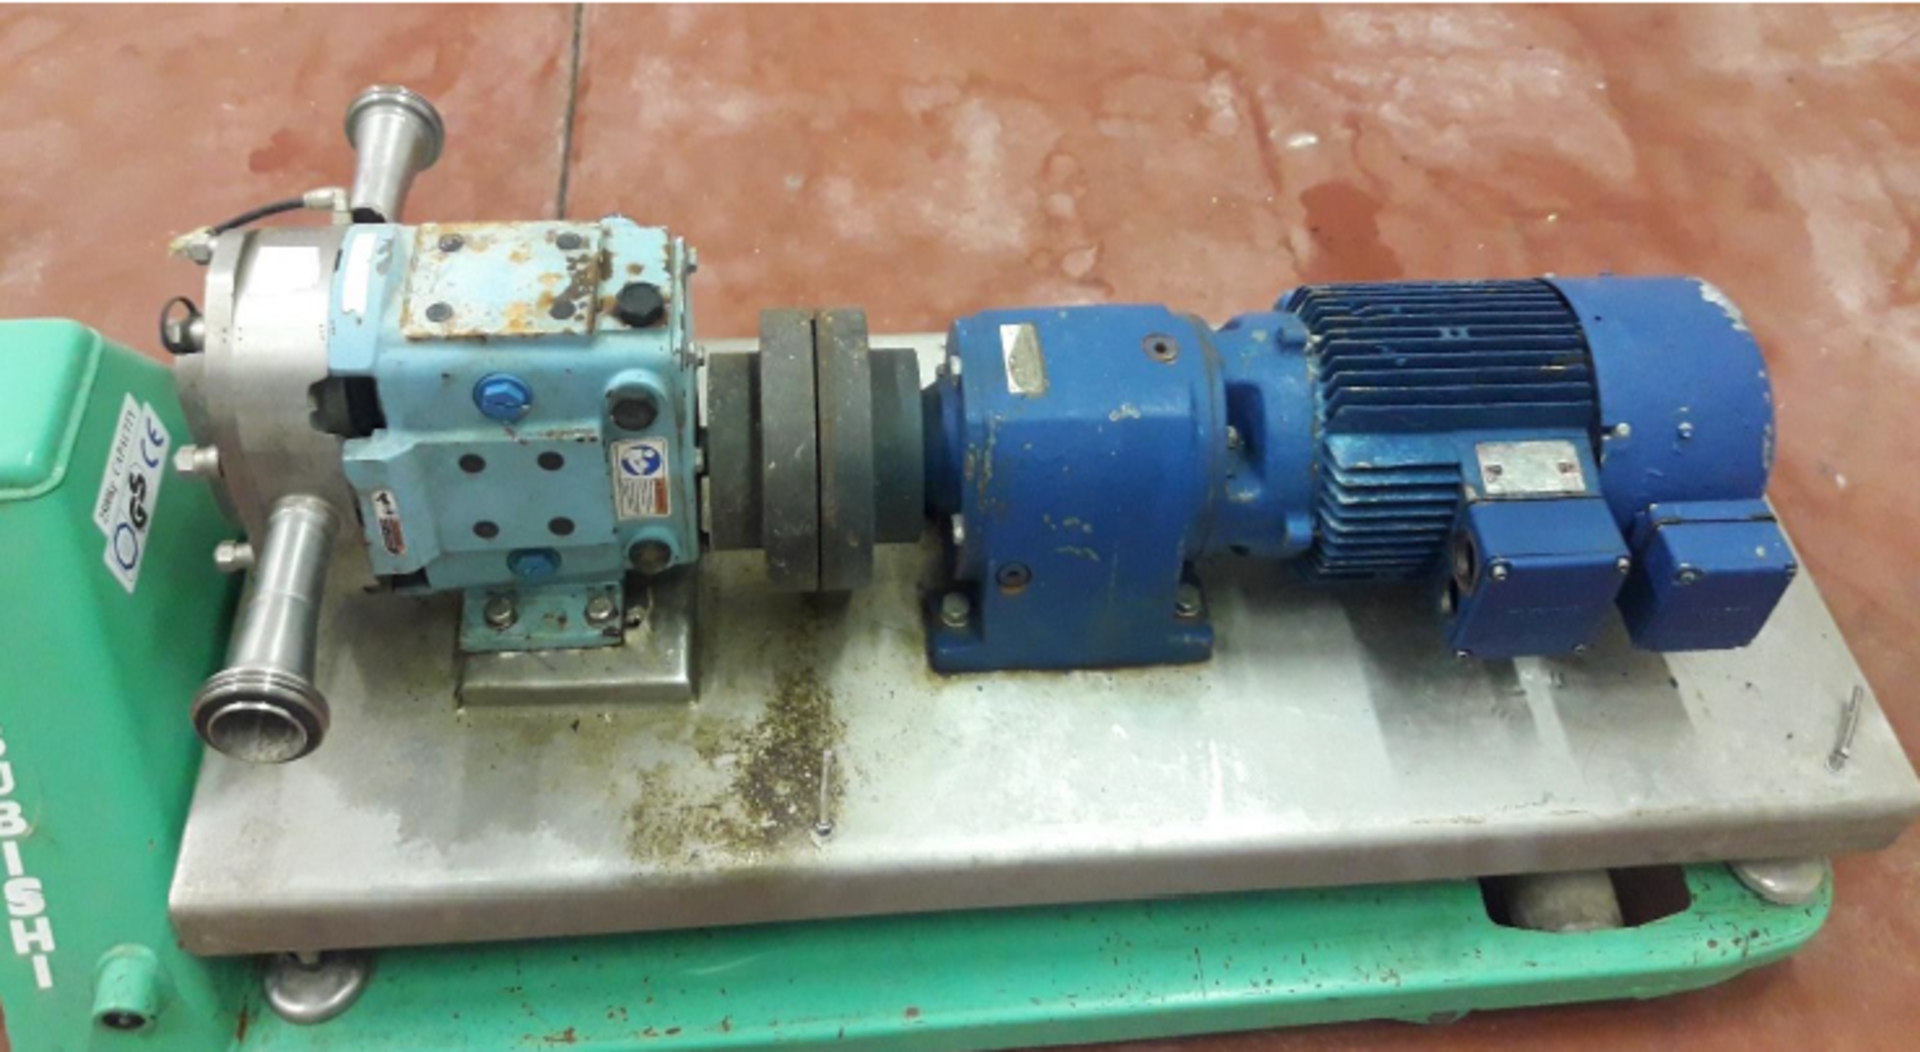 Static Lobe Pump, Company: Cherry - Burrell, Model No: 030U2 - Sr. No: 377587-05